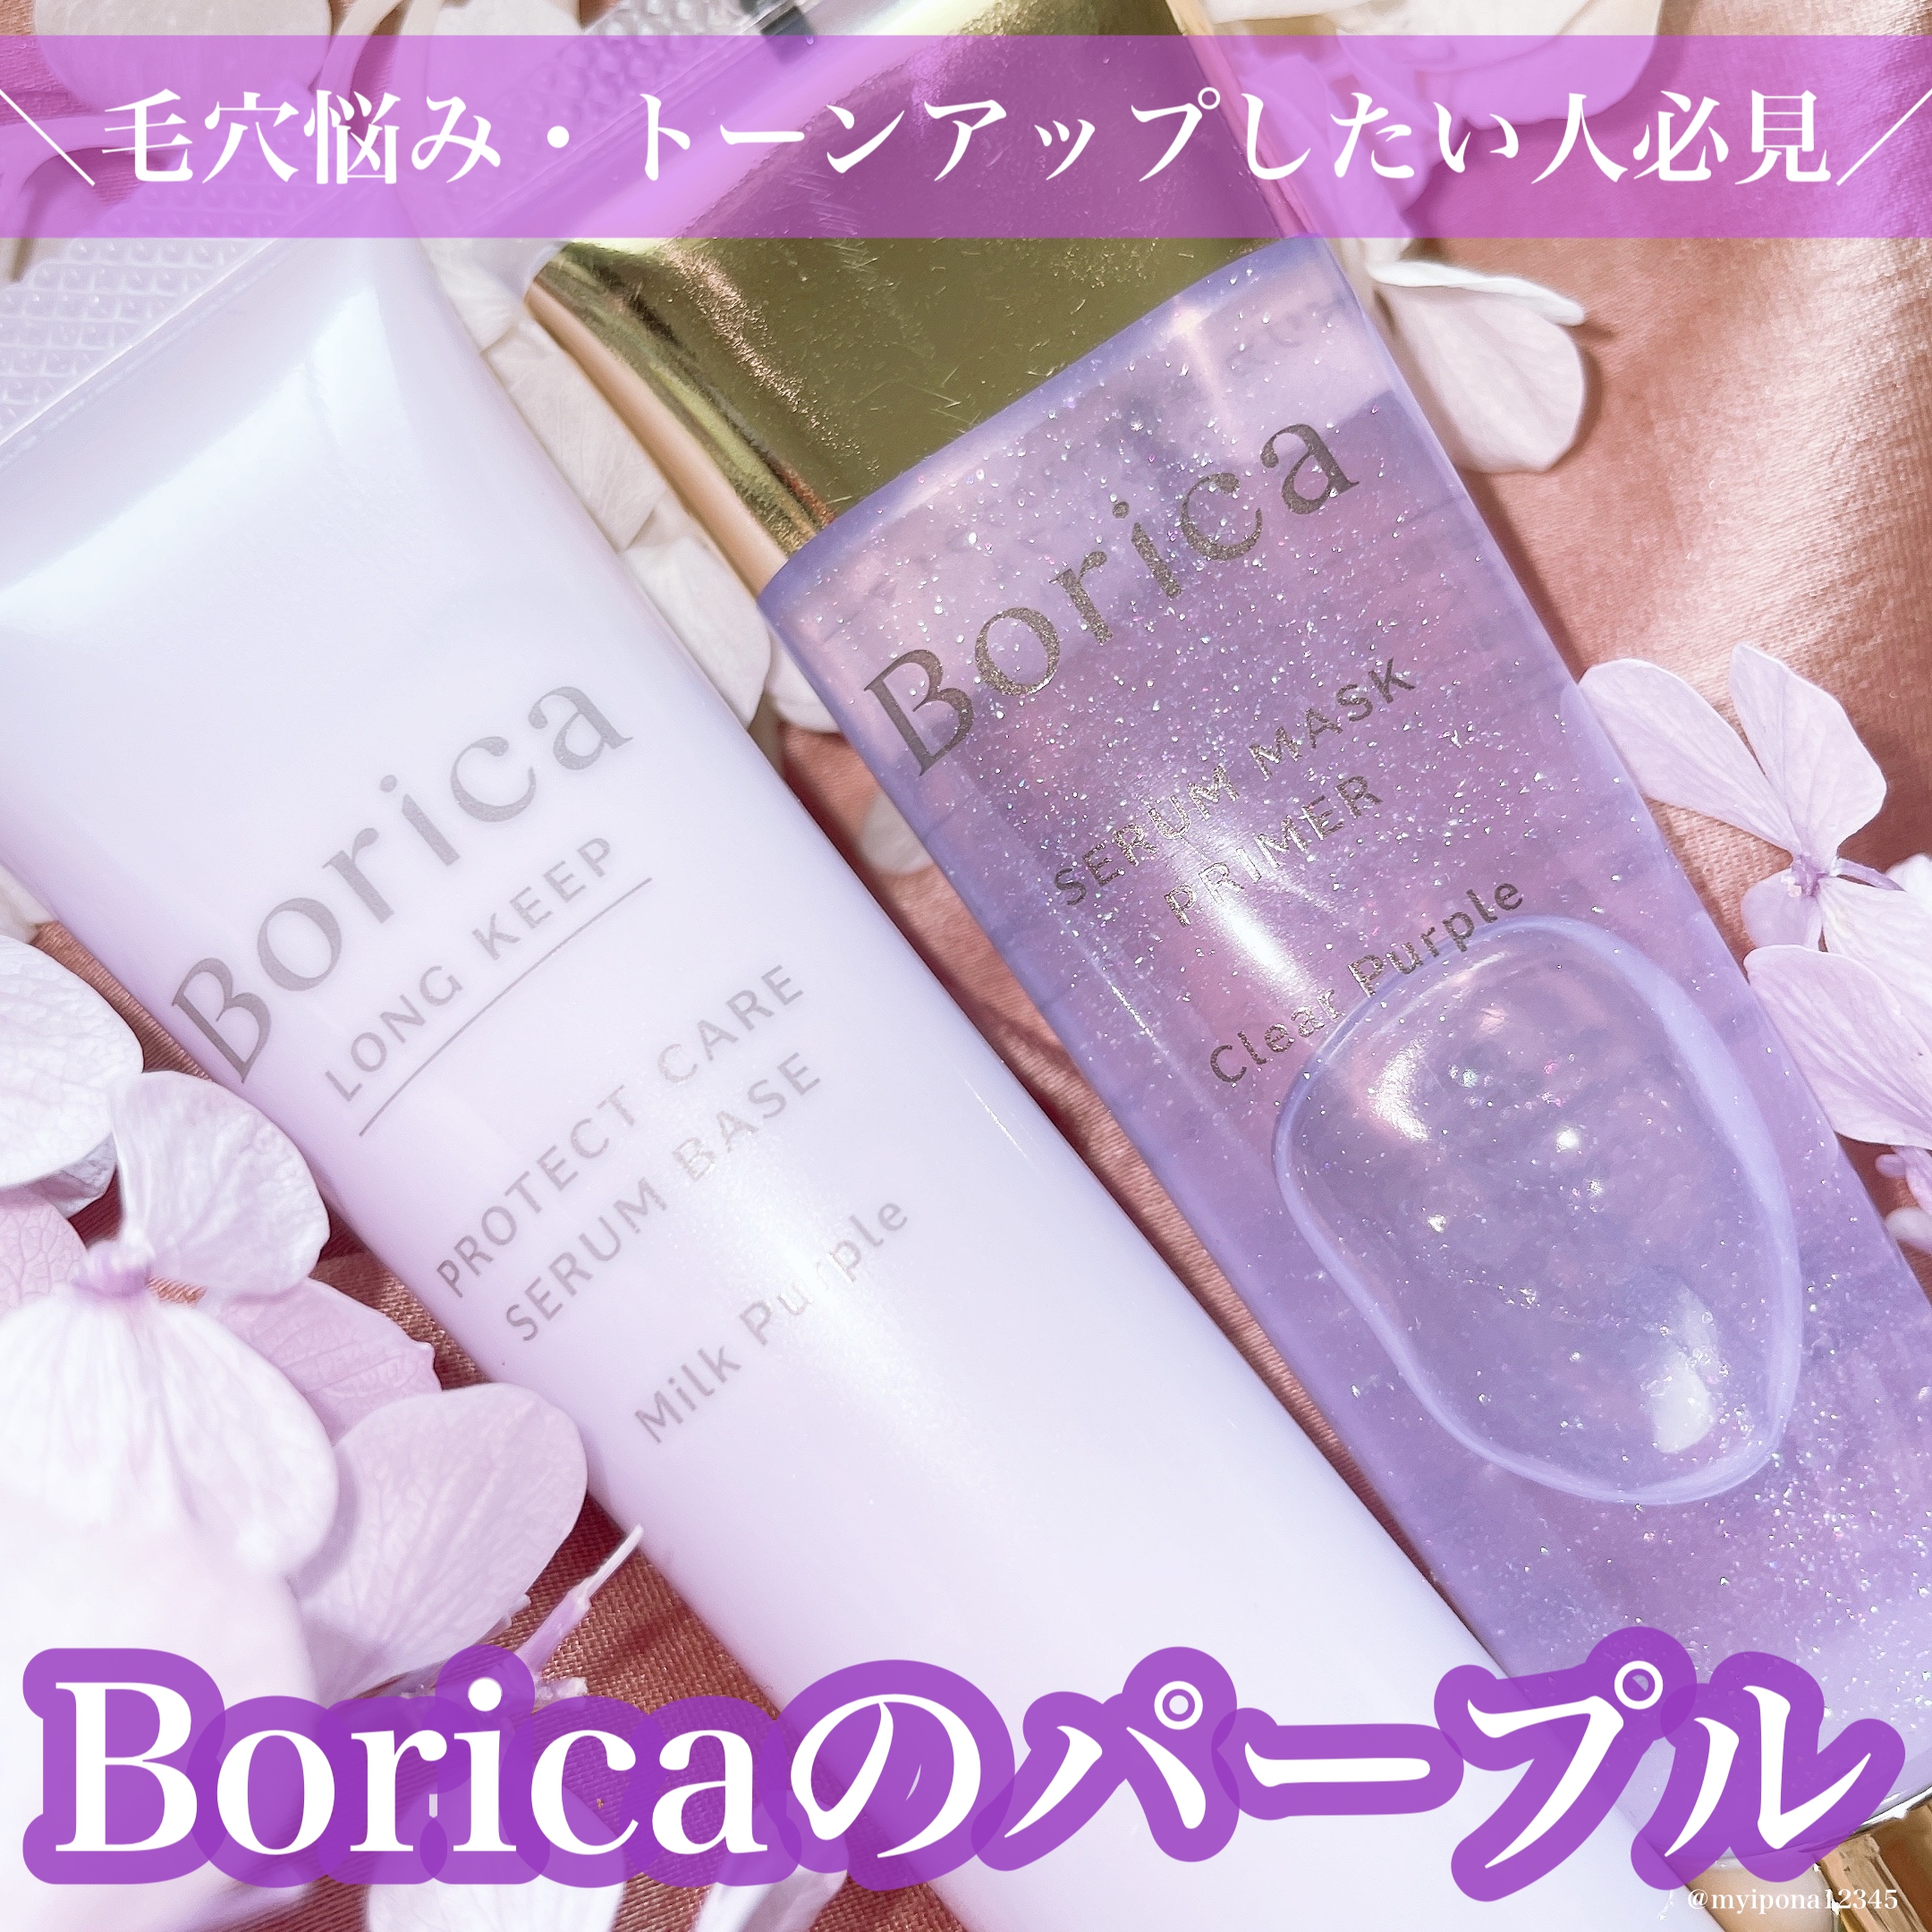 Borica(ボリカ) くずれ防止 美容液ケアベースの良い点・メリットに関するみぃぽなさんの口コミ画像1